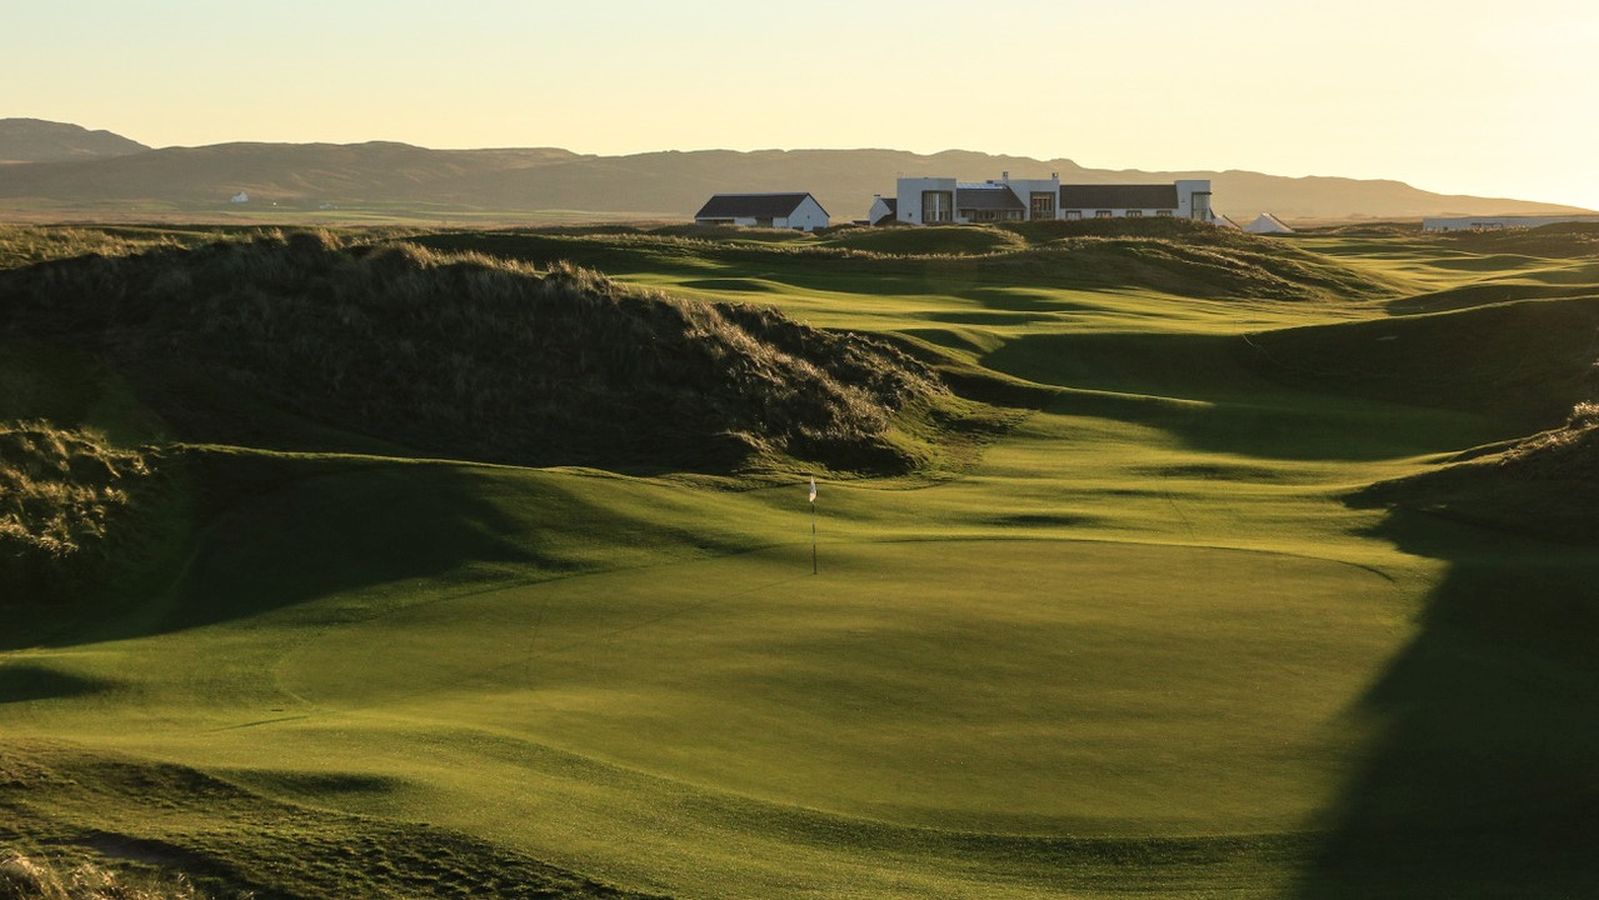 Ebenfalls ausgezeichnet: das Machrie Hotel & Golf Links, eingebettet in die Dünen eines unberührten Sieben-Meilen-Strandes auf der Whisky-Insel Islay.